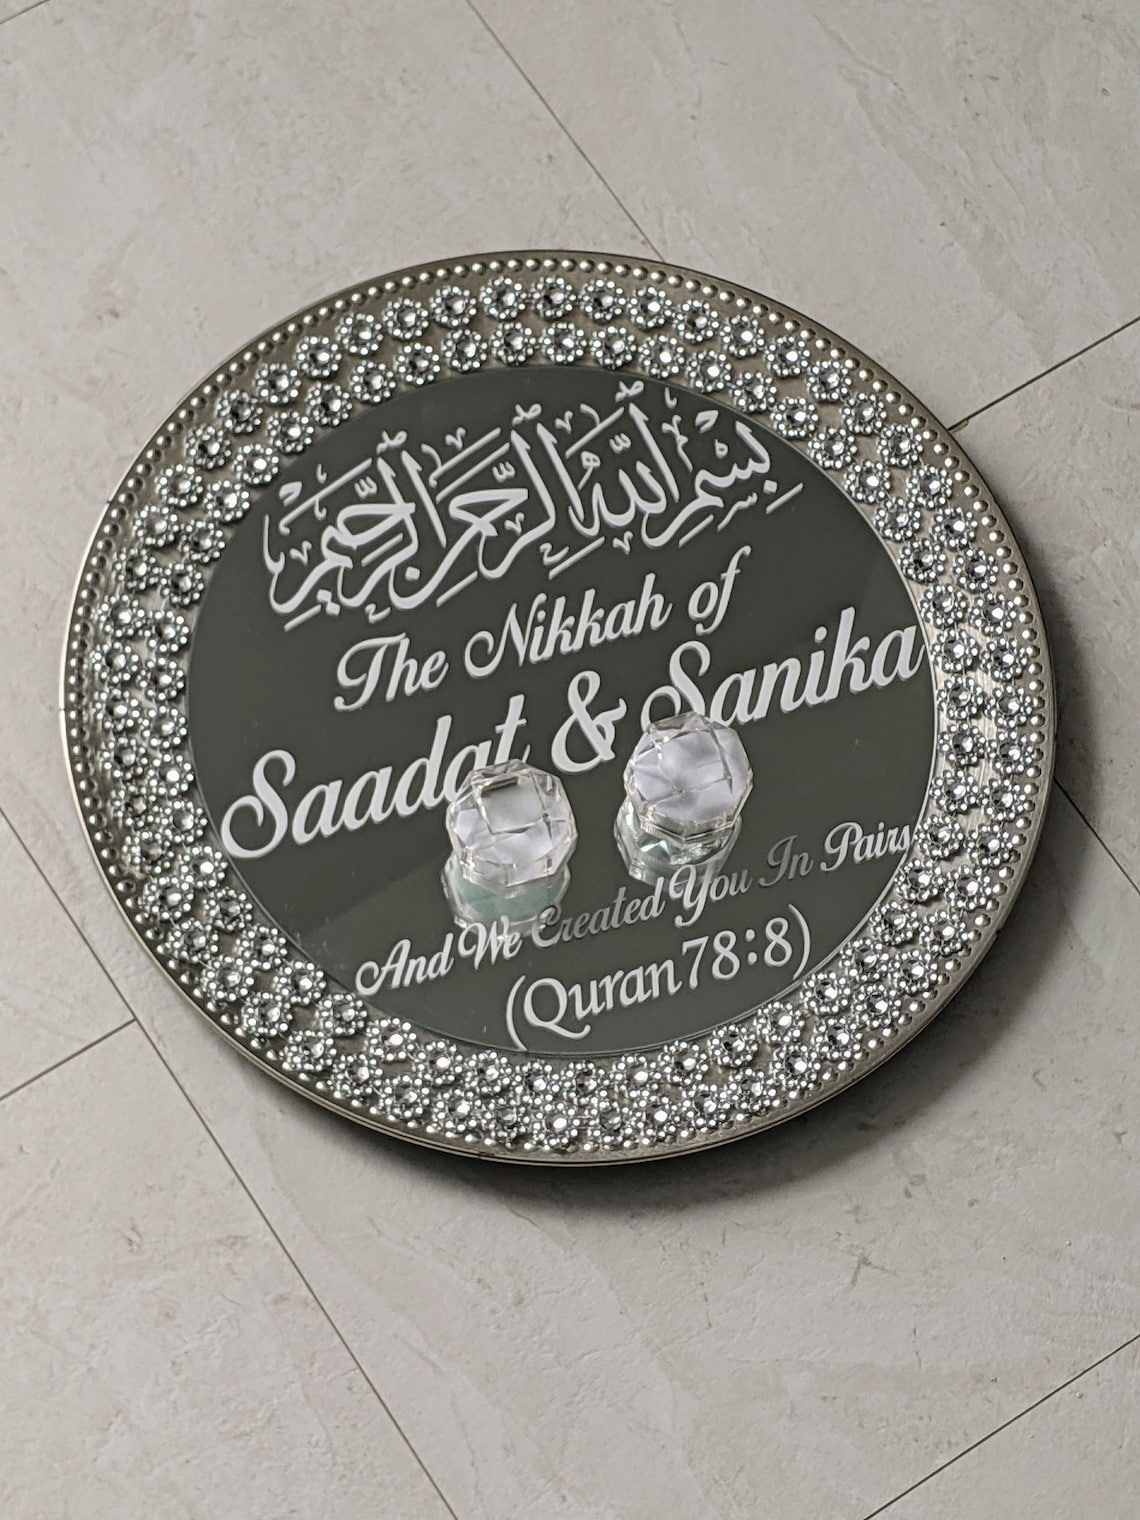 Nikkah Mirror Ring Plate Nikkah Gift Ring Holders Nikkah | Etsy